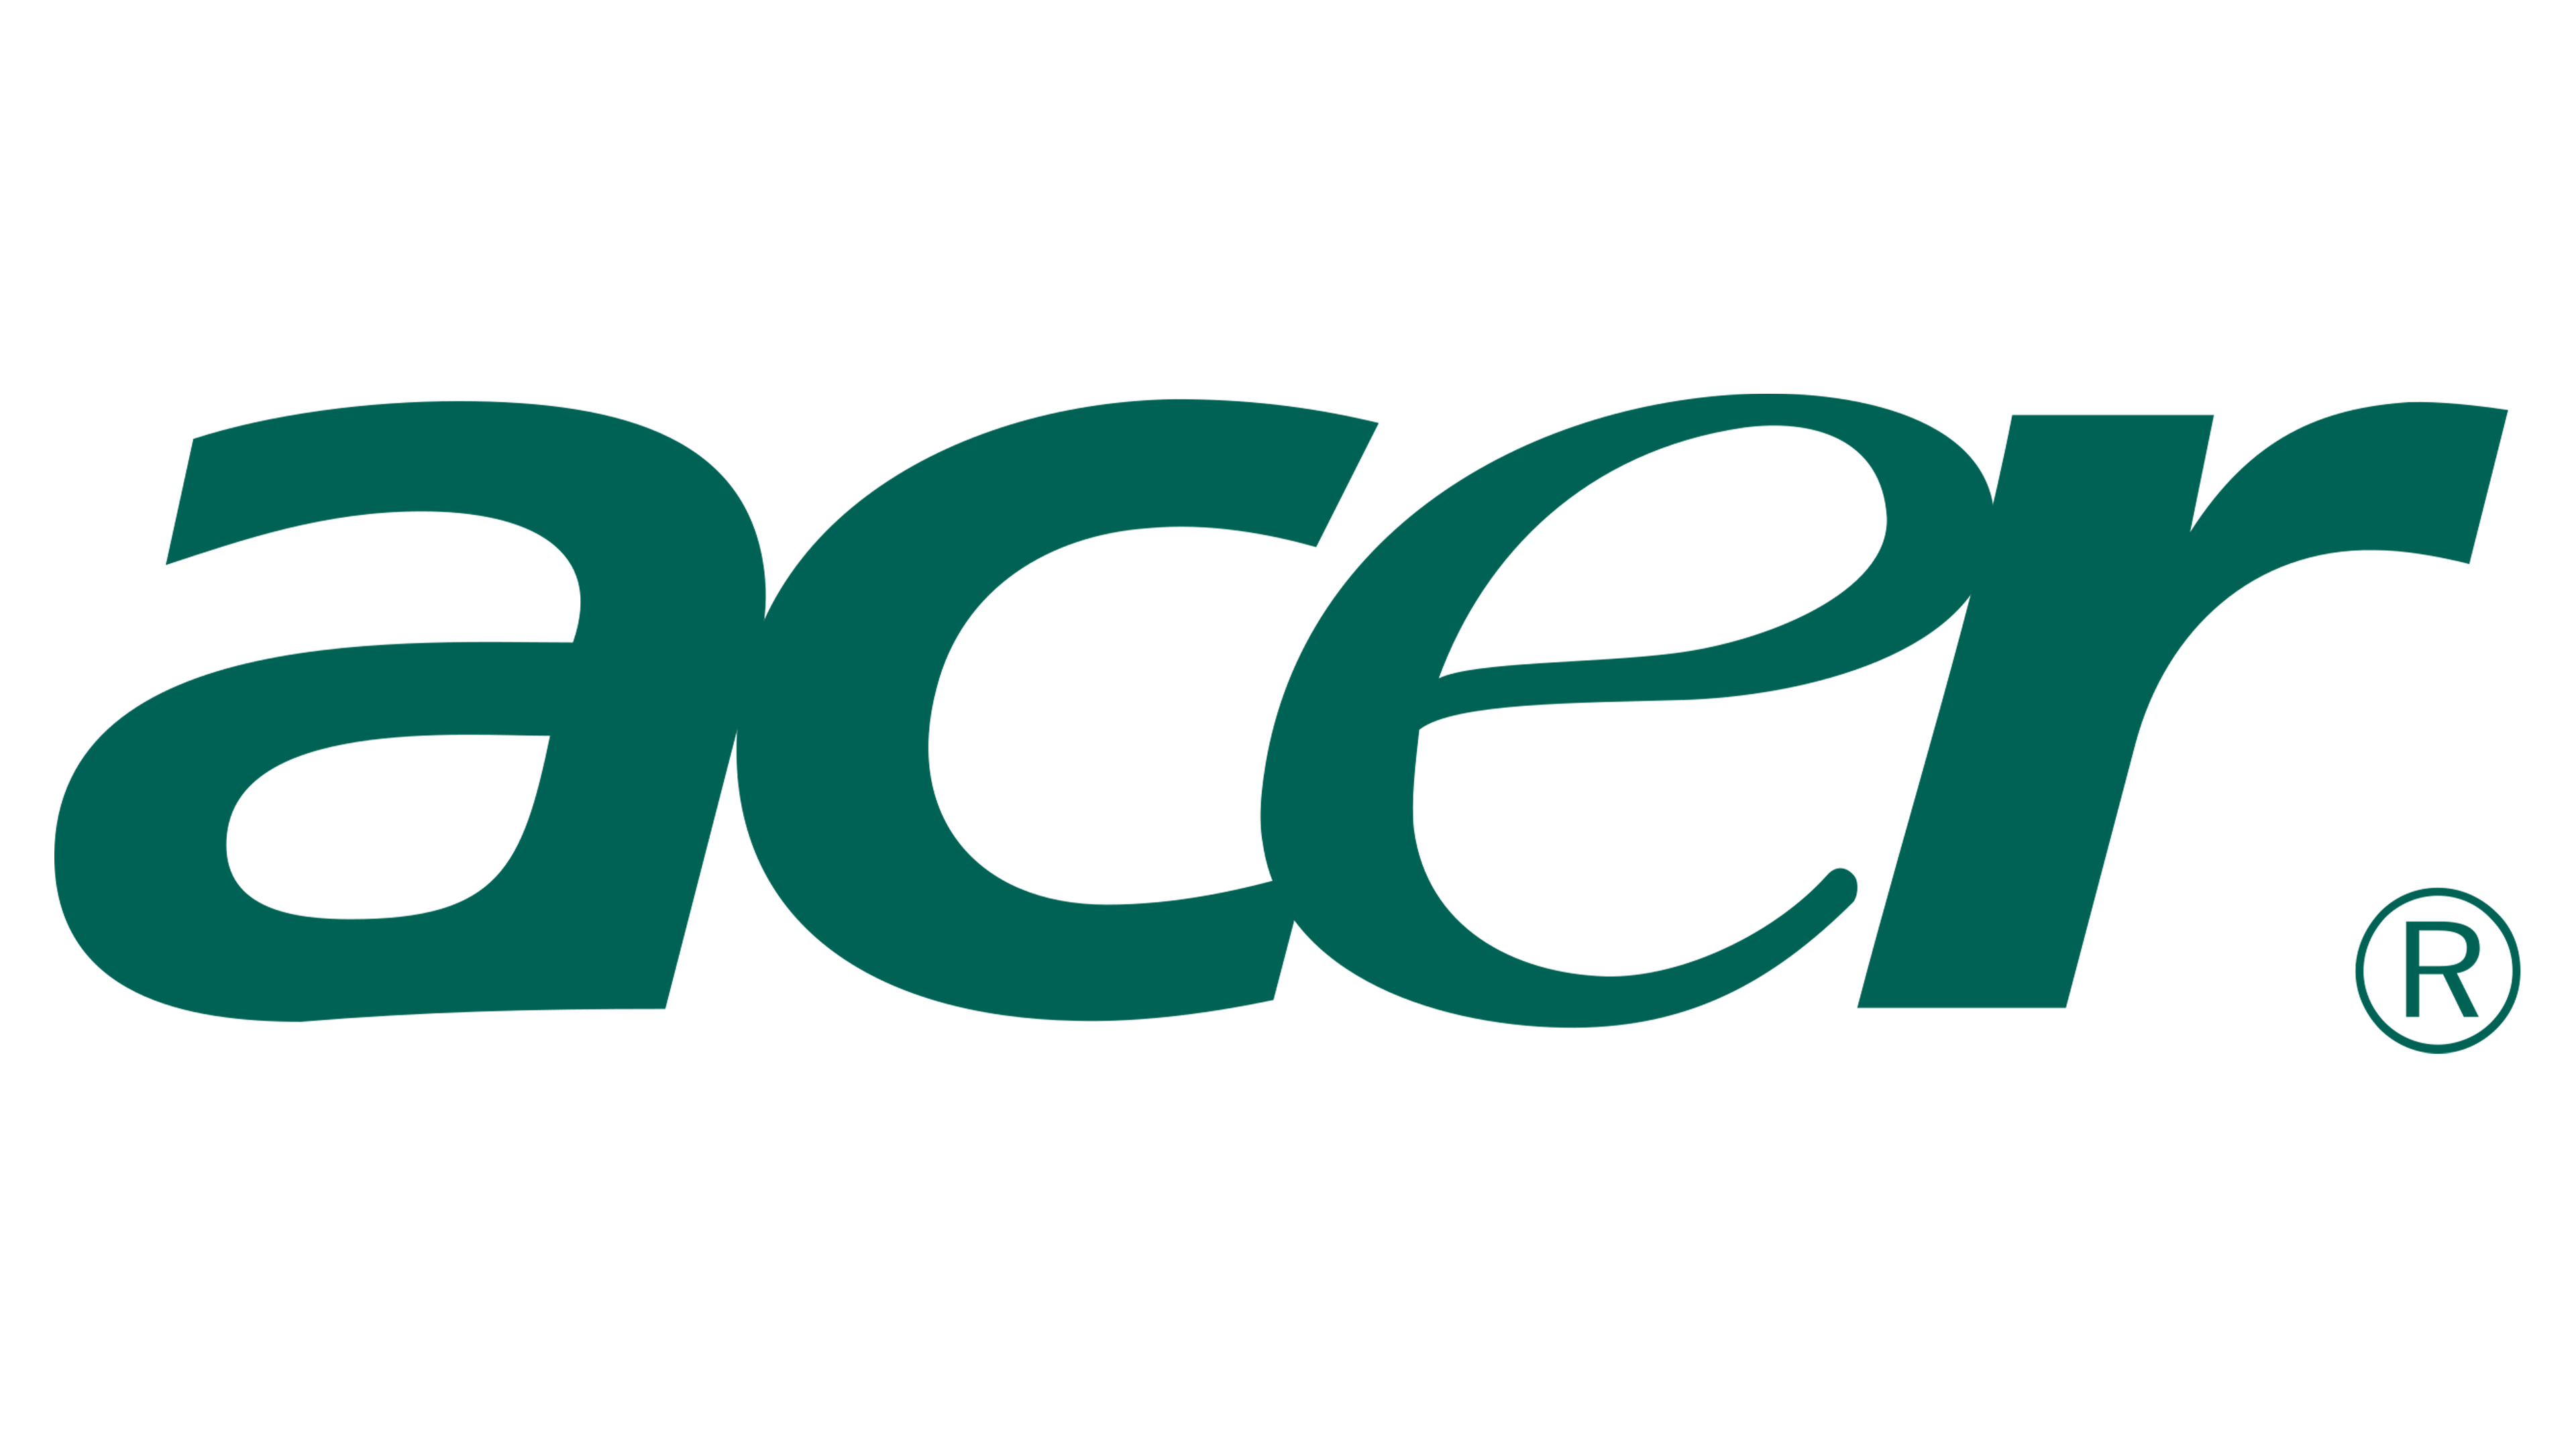 Acer_Logo.svg